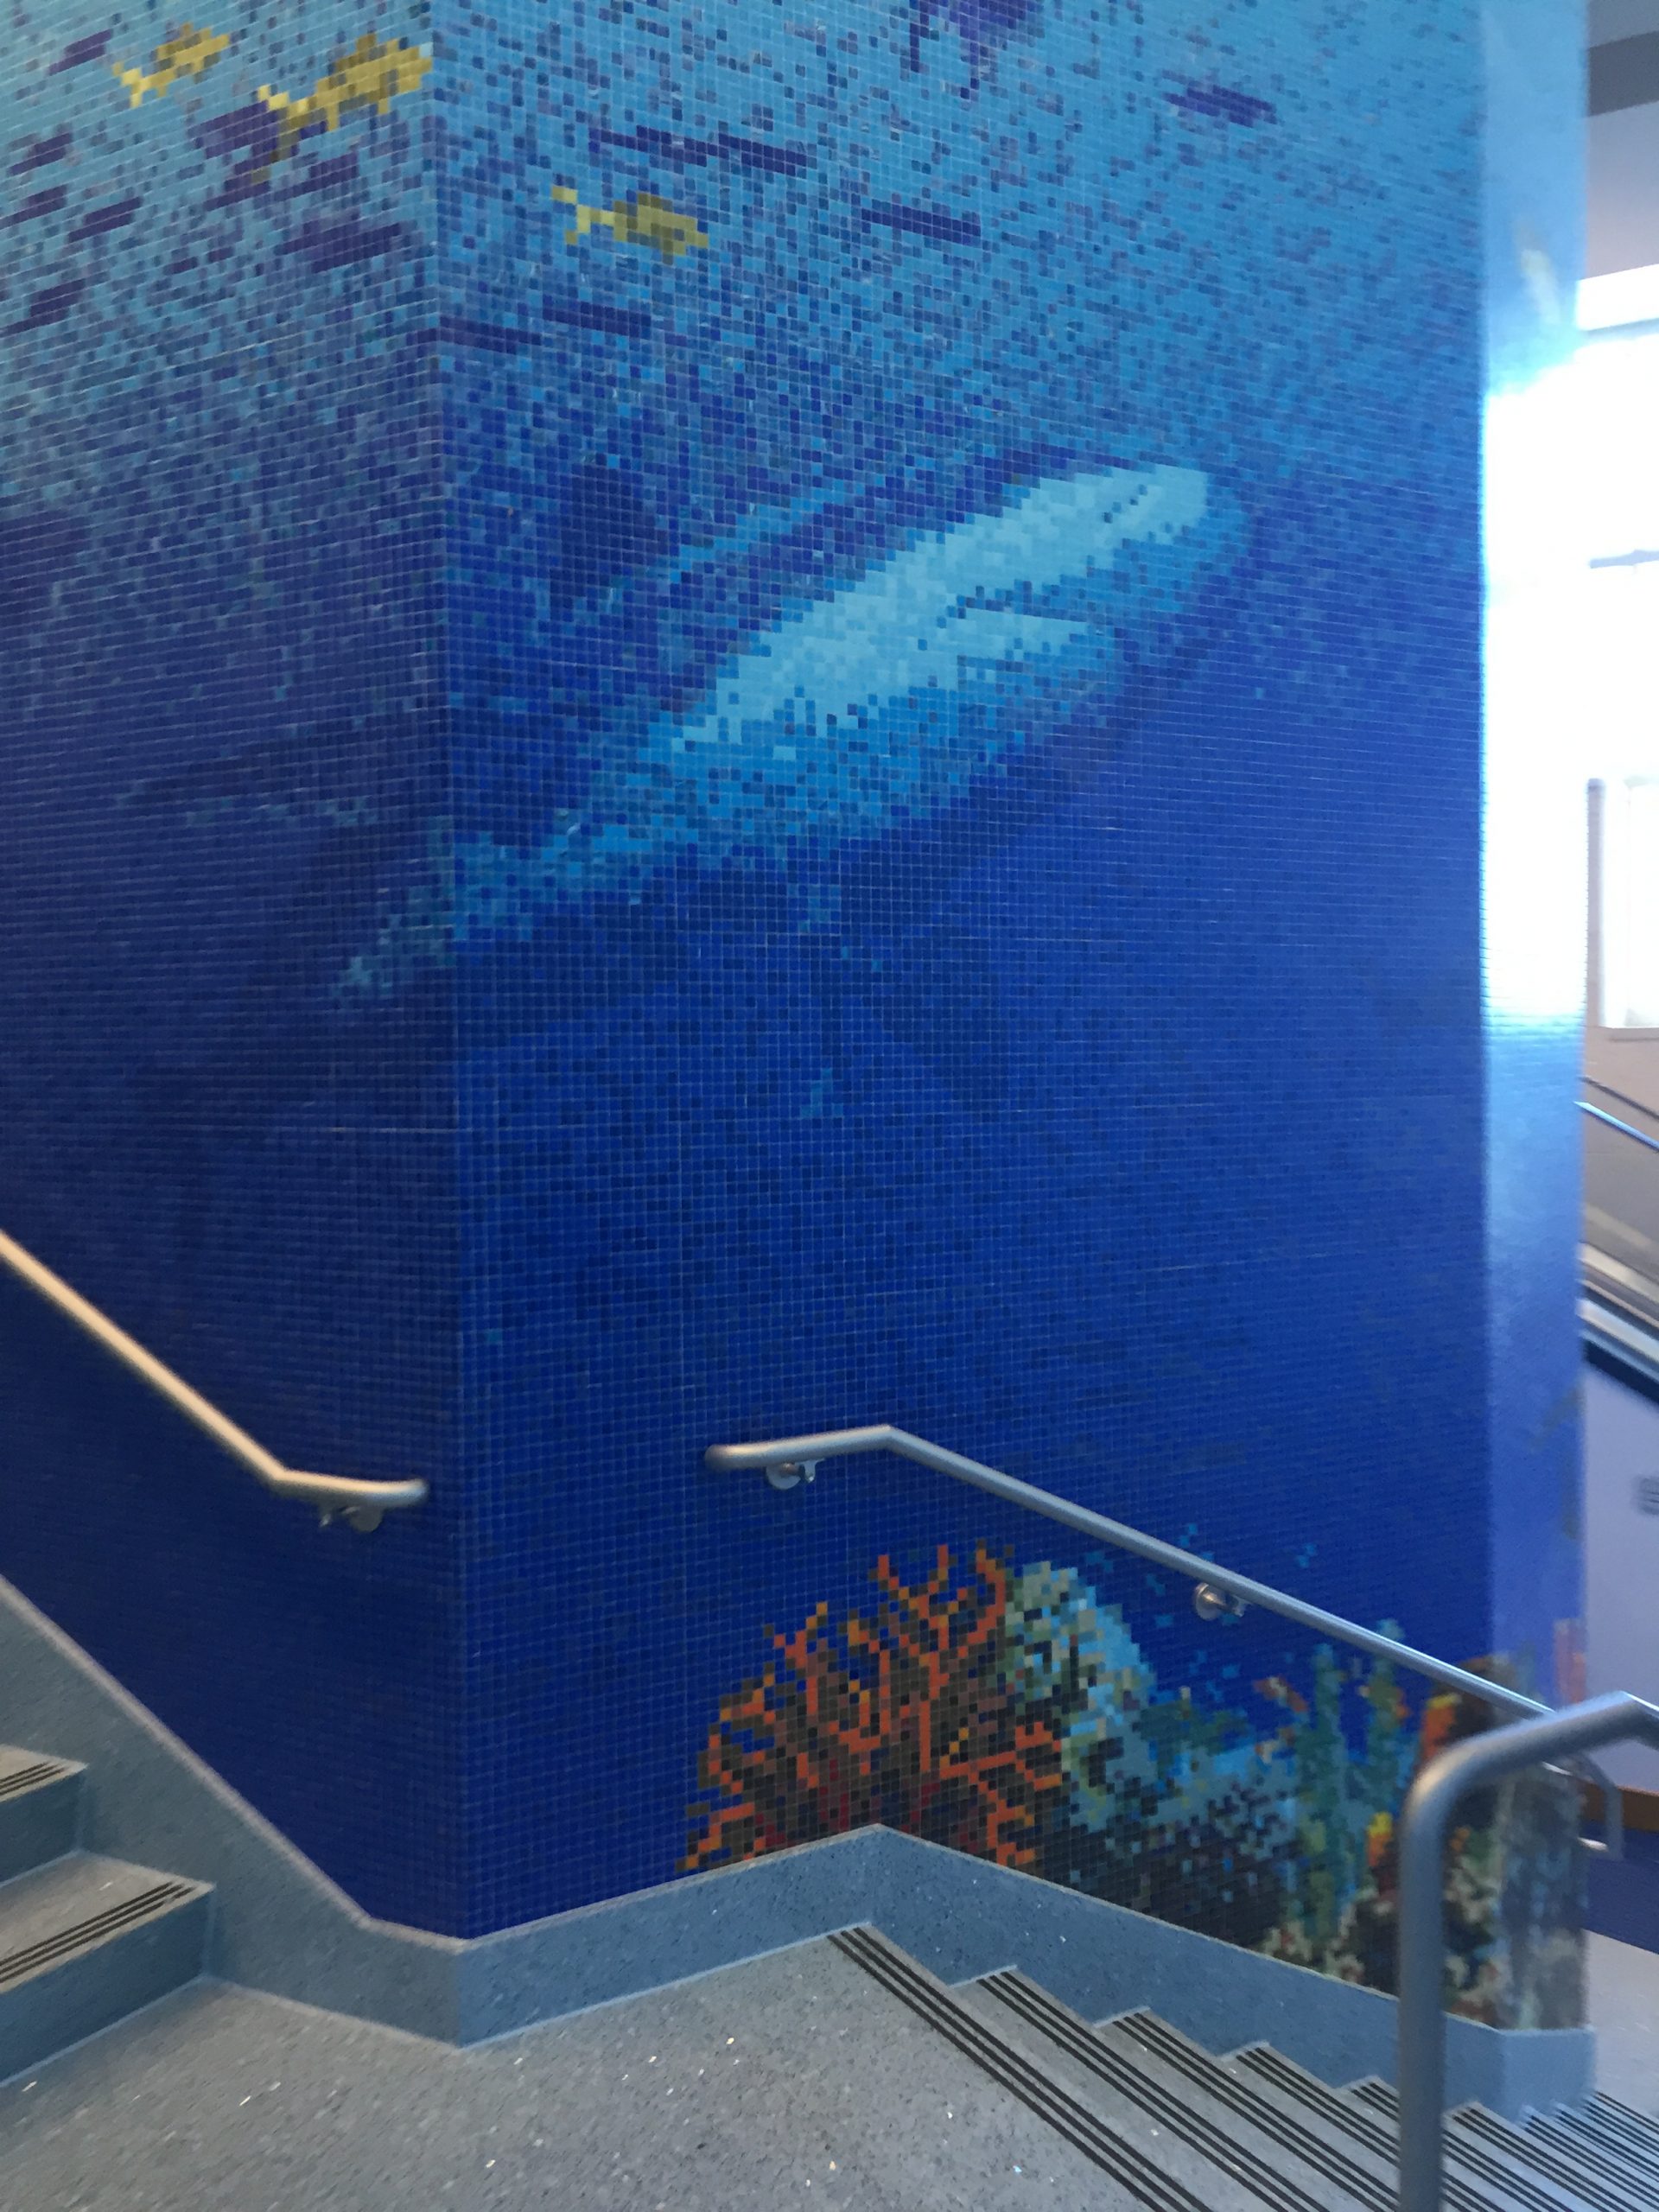 Texas State Aquarium “Caribbean Journey”